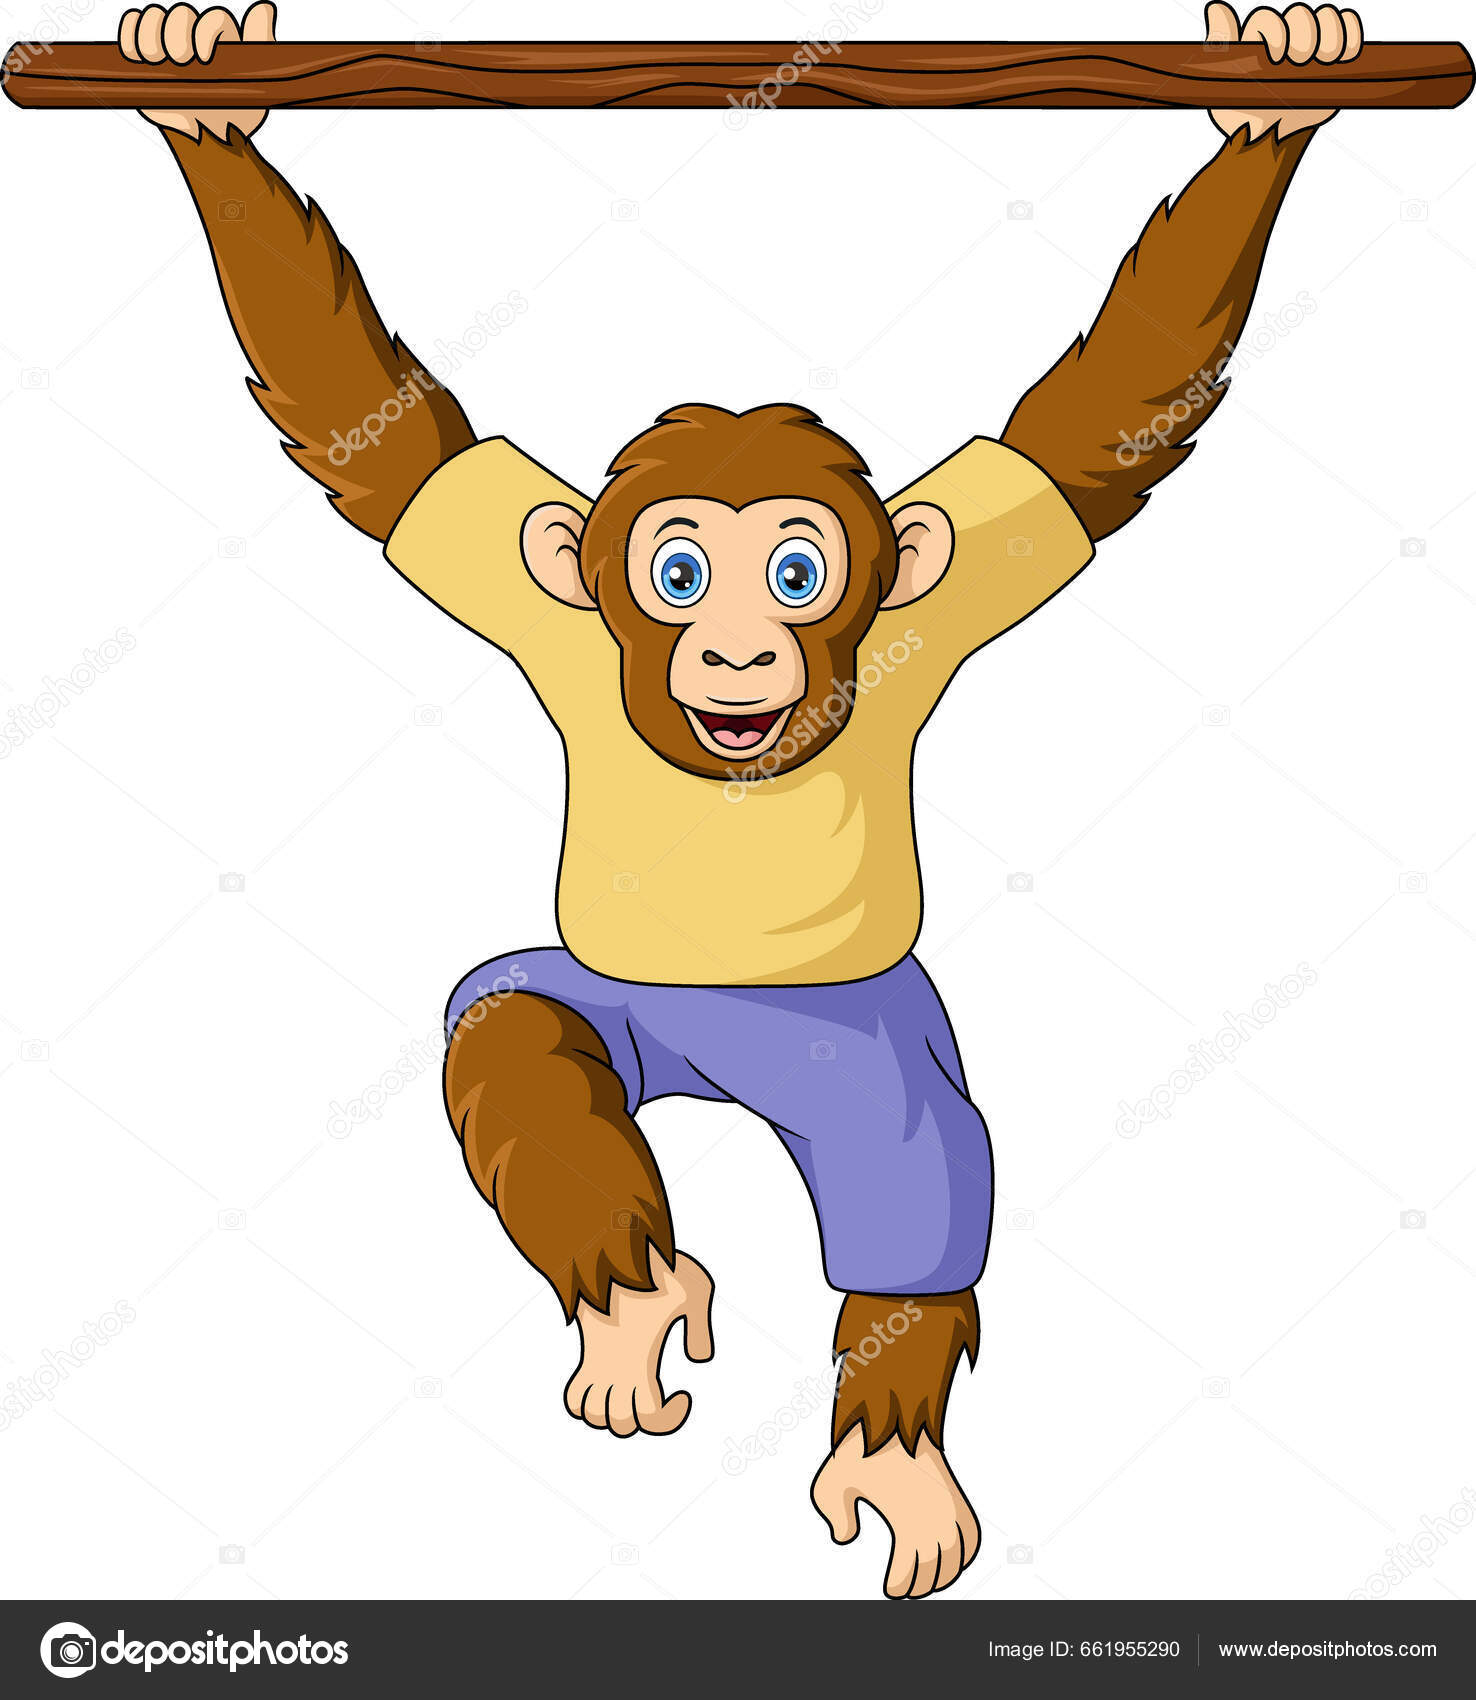 Ilustração de desenho de macaco bonito sentado